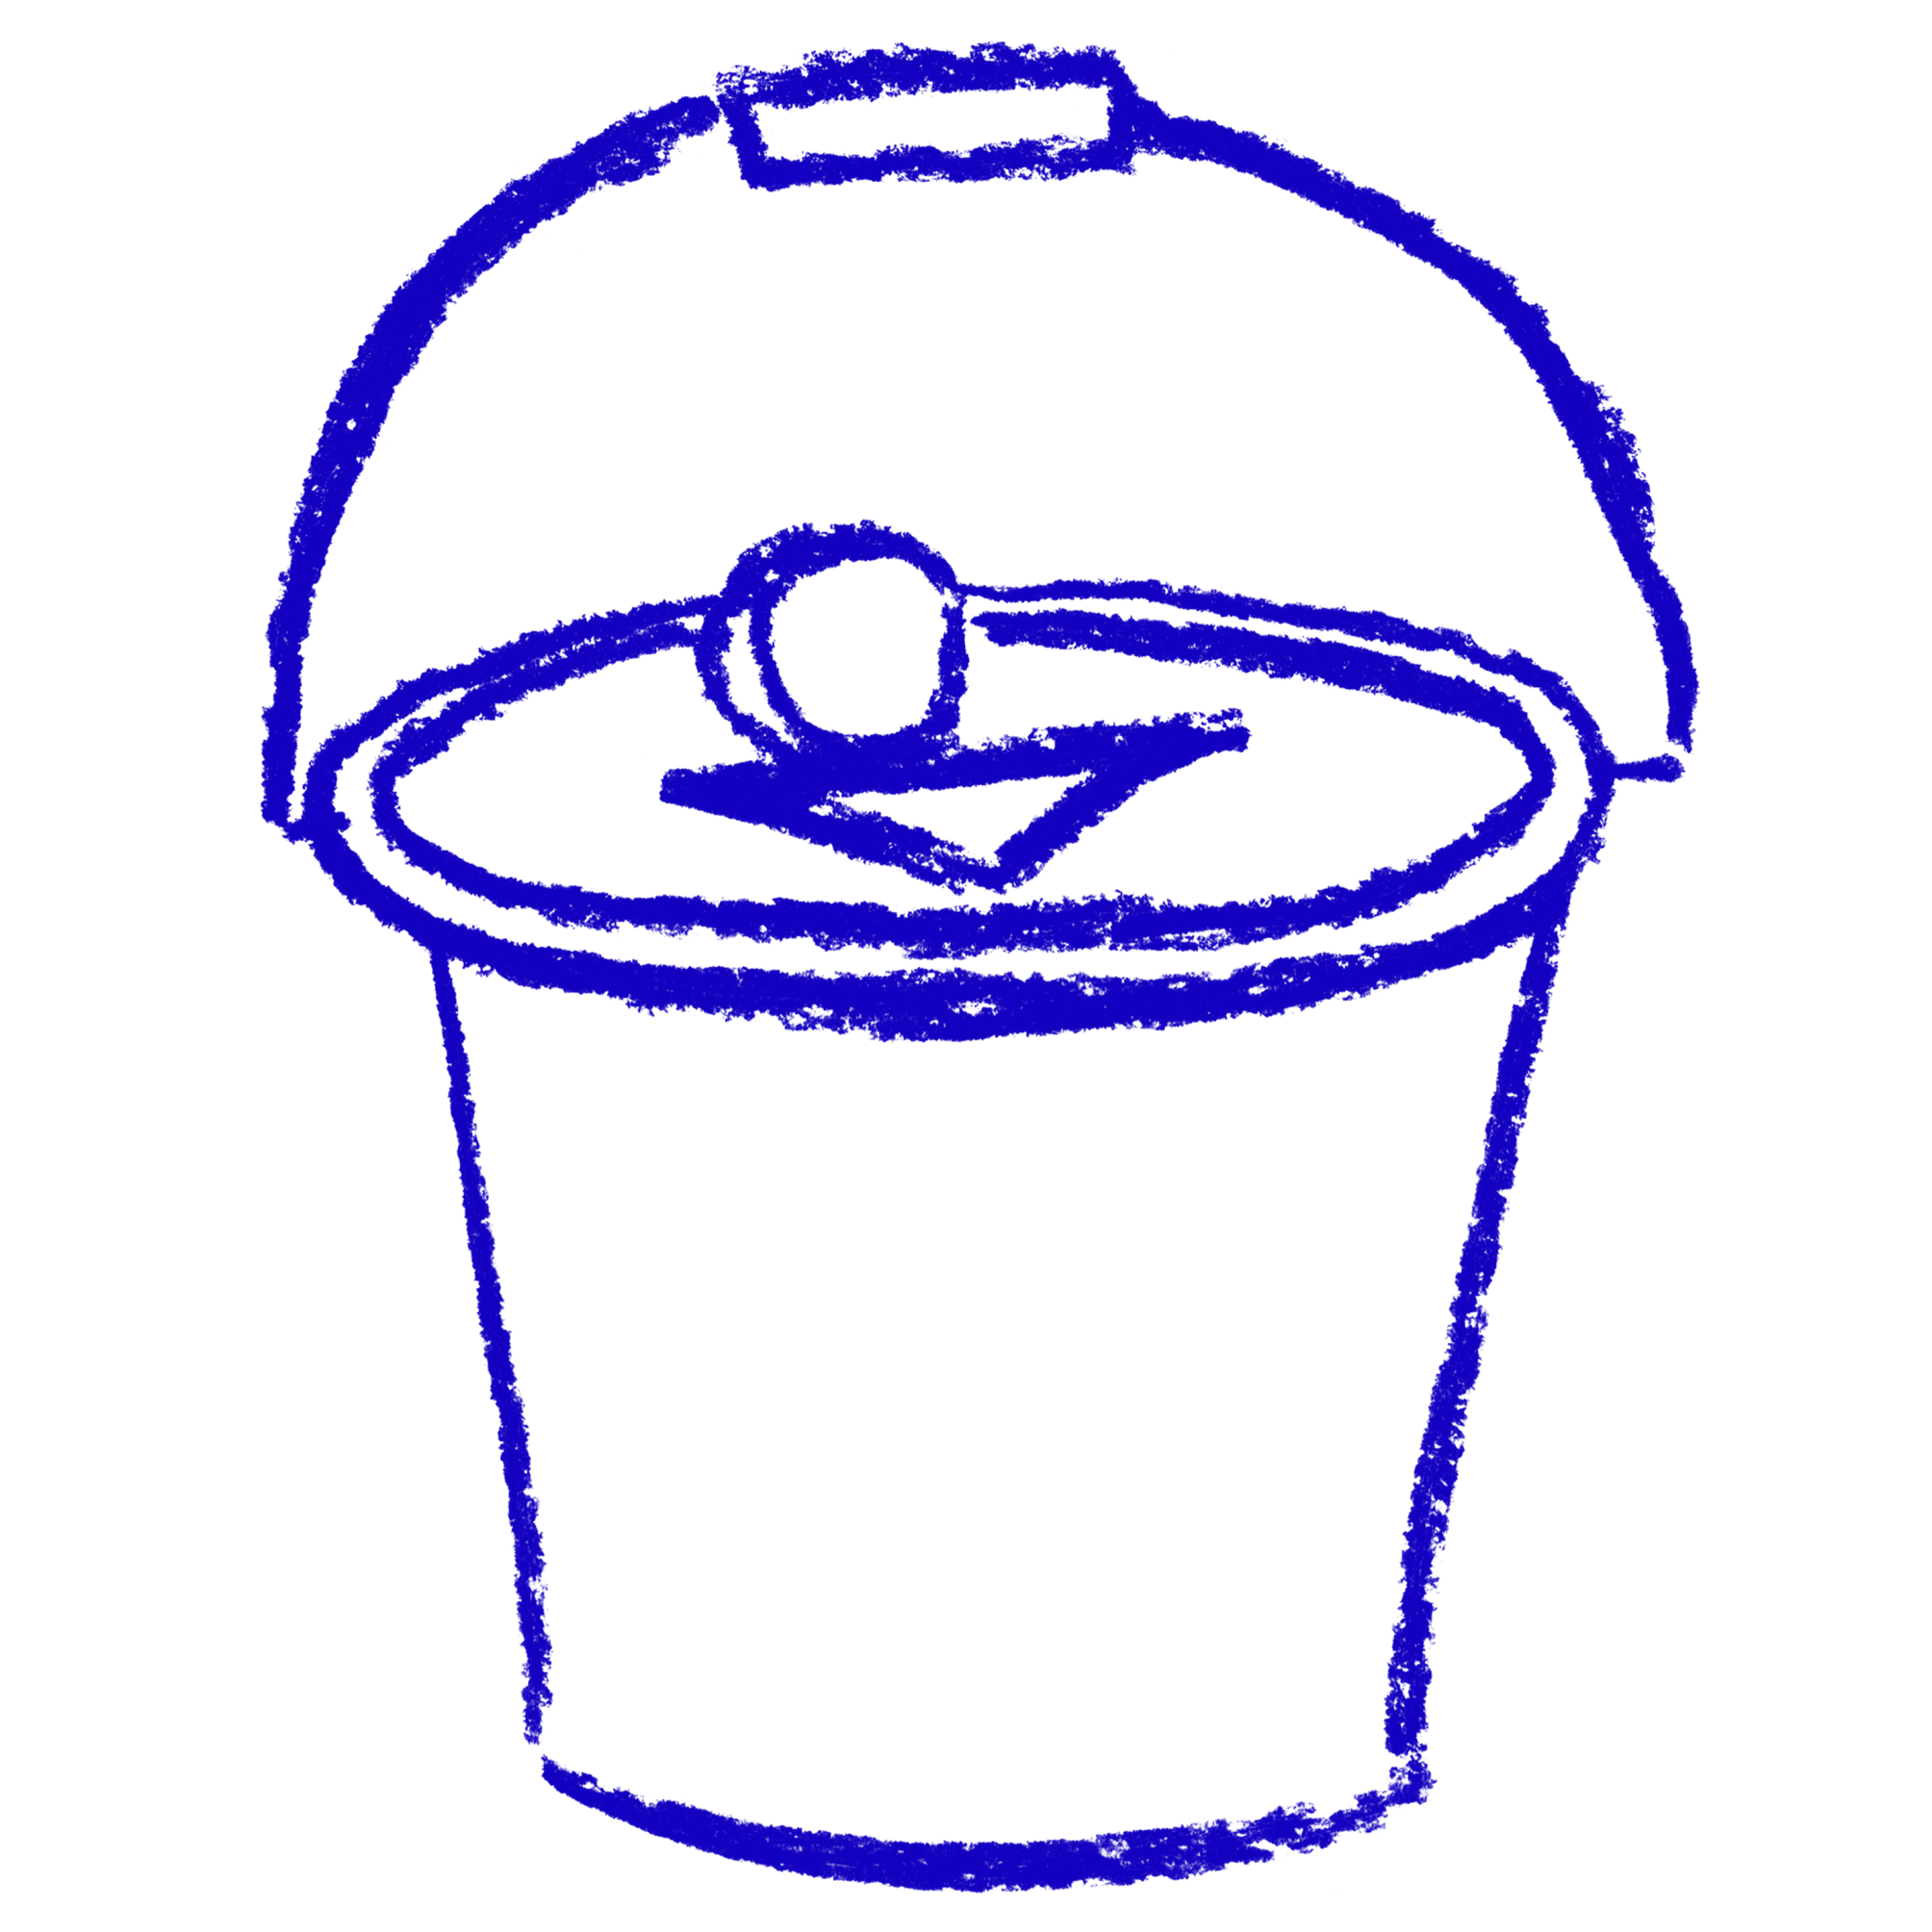 Donation Bucket illustration in blue 